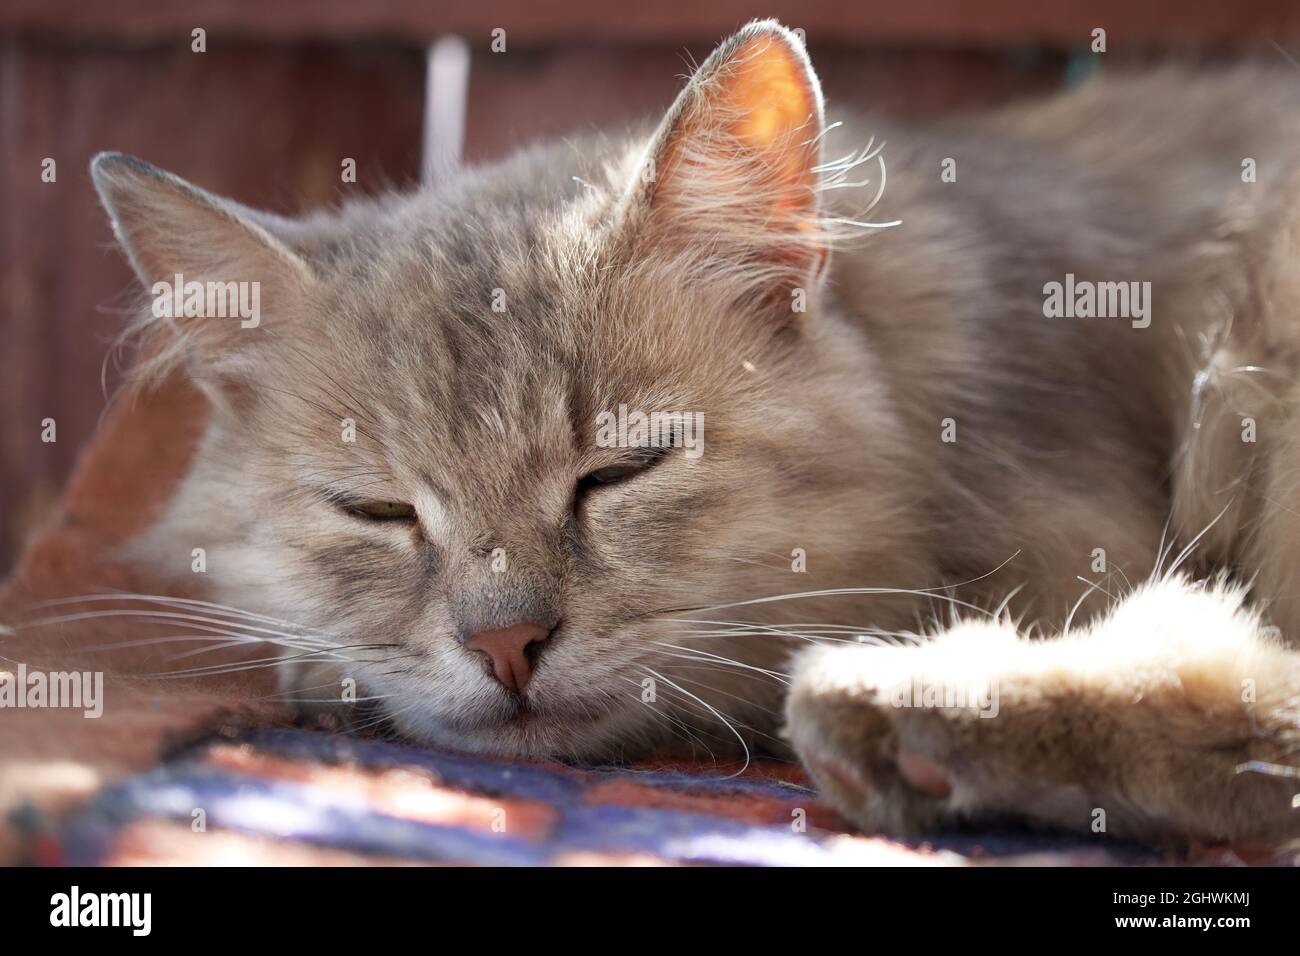 Muso di un gatto grigio addormentato, primo piano. Ritratto di un gatto domestico che dorme. Foto Stock